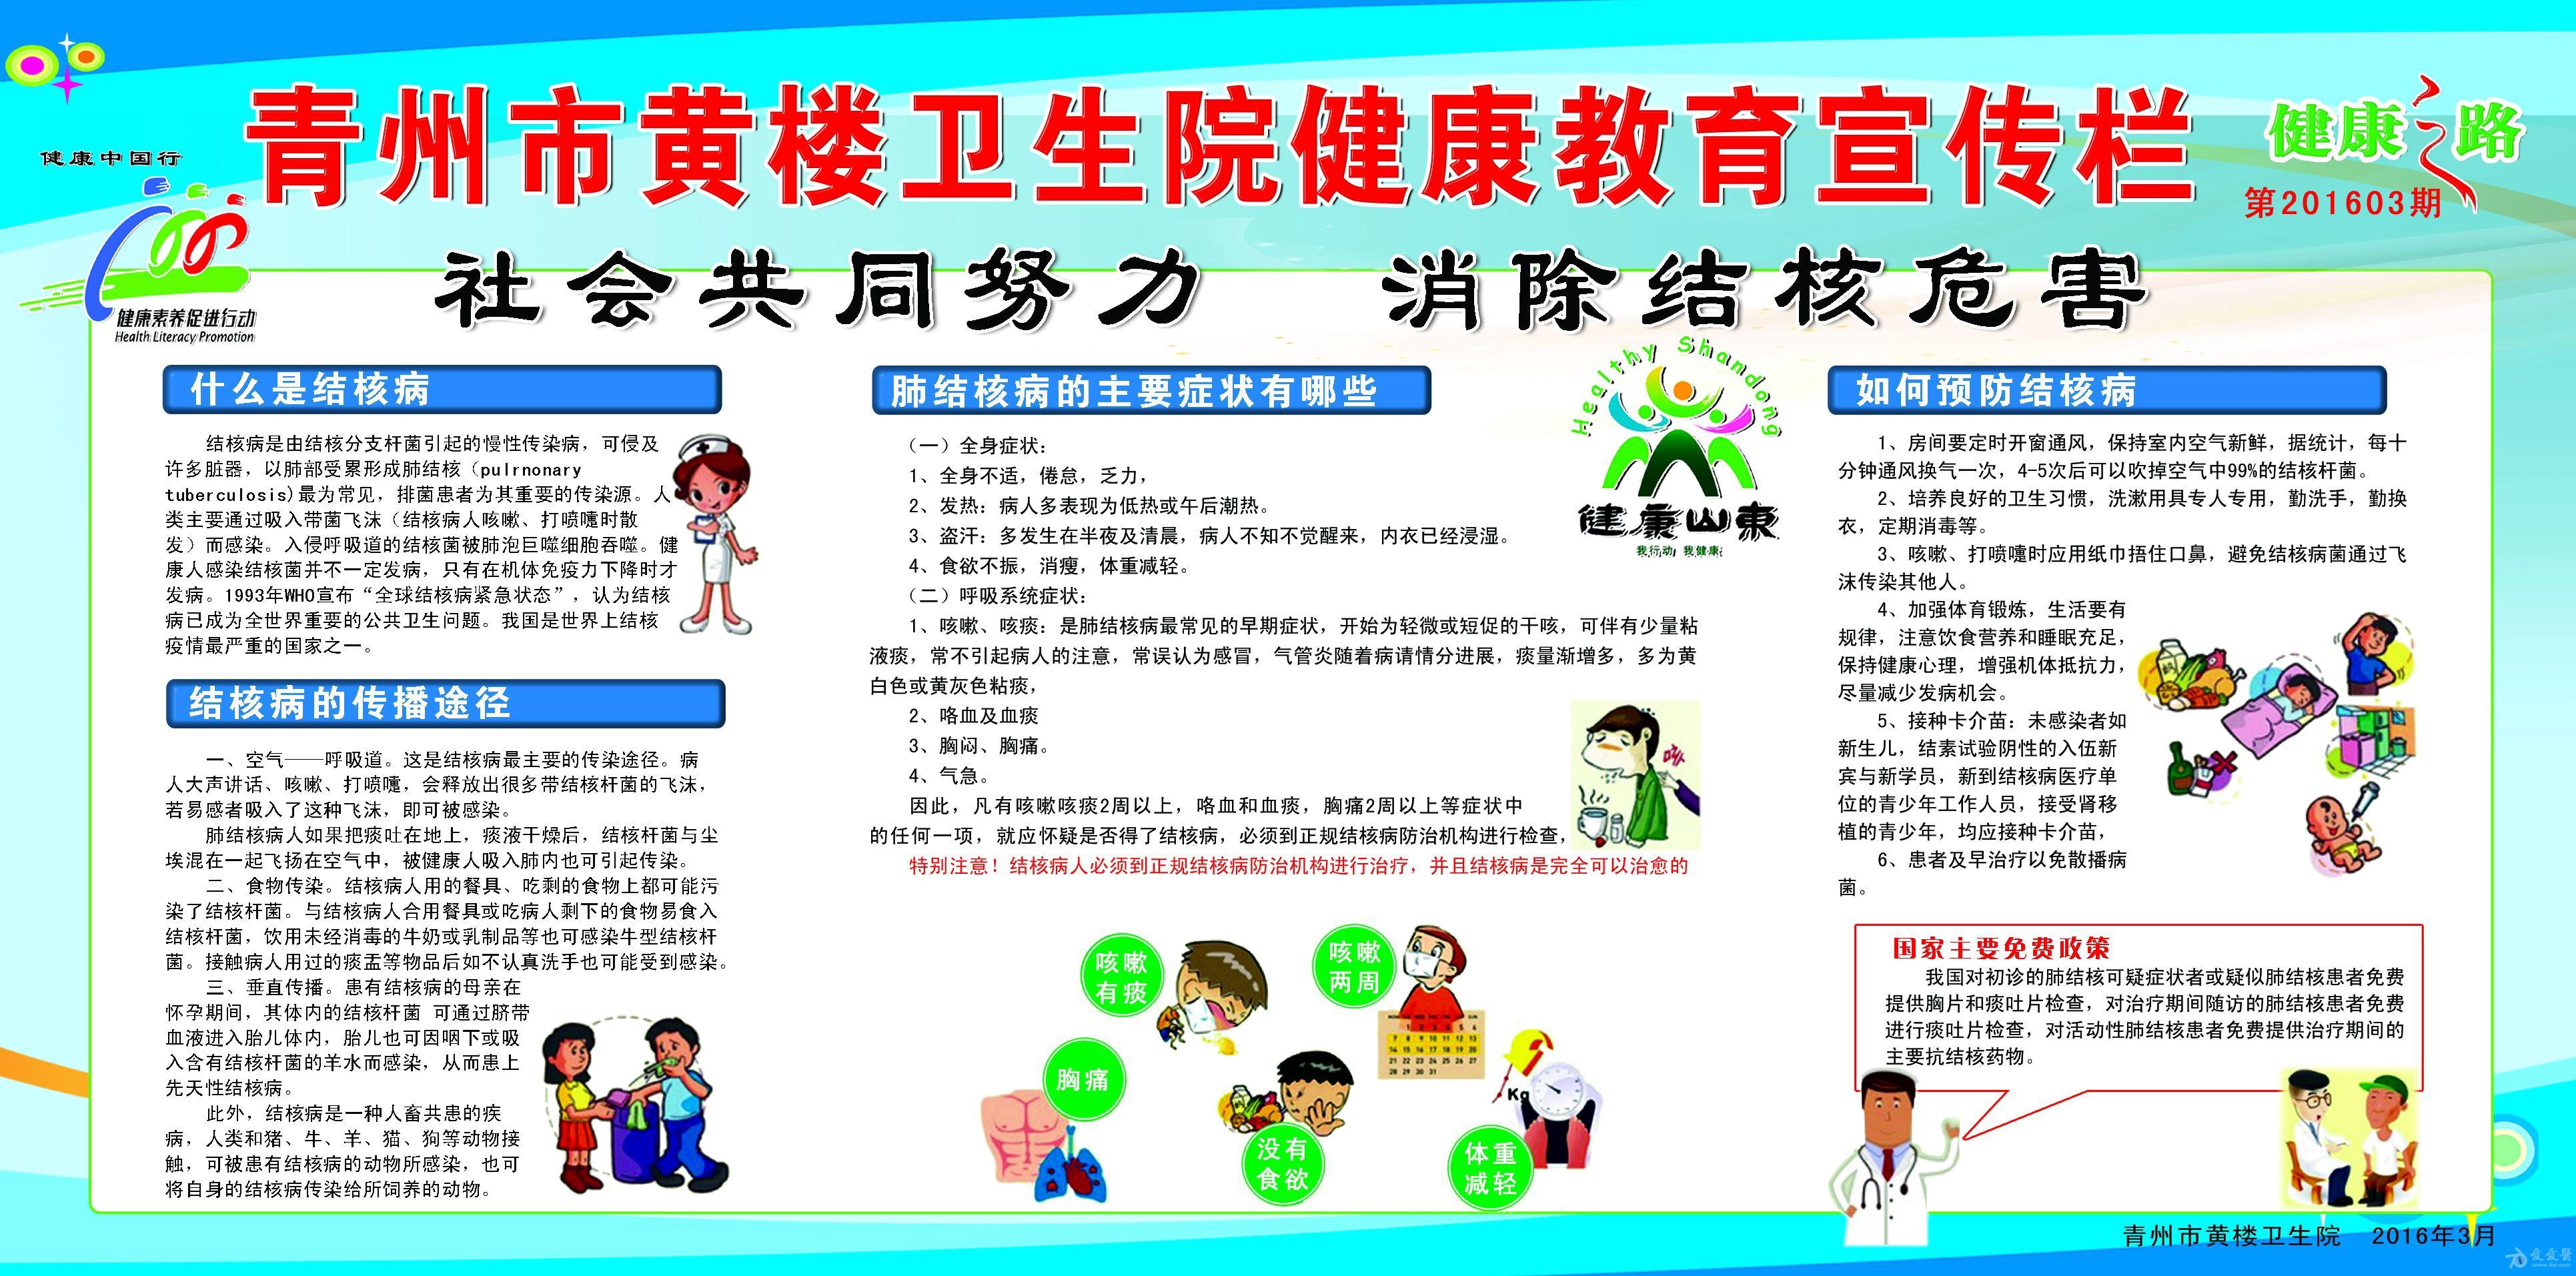 青州市黄楼卫生院健康教育宣传栏第三期(2016年)